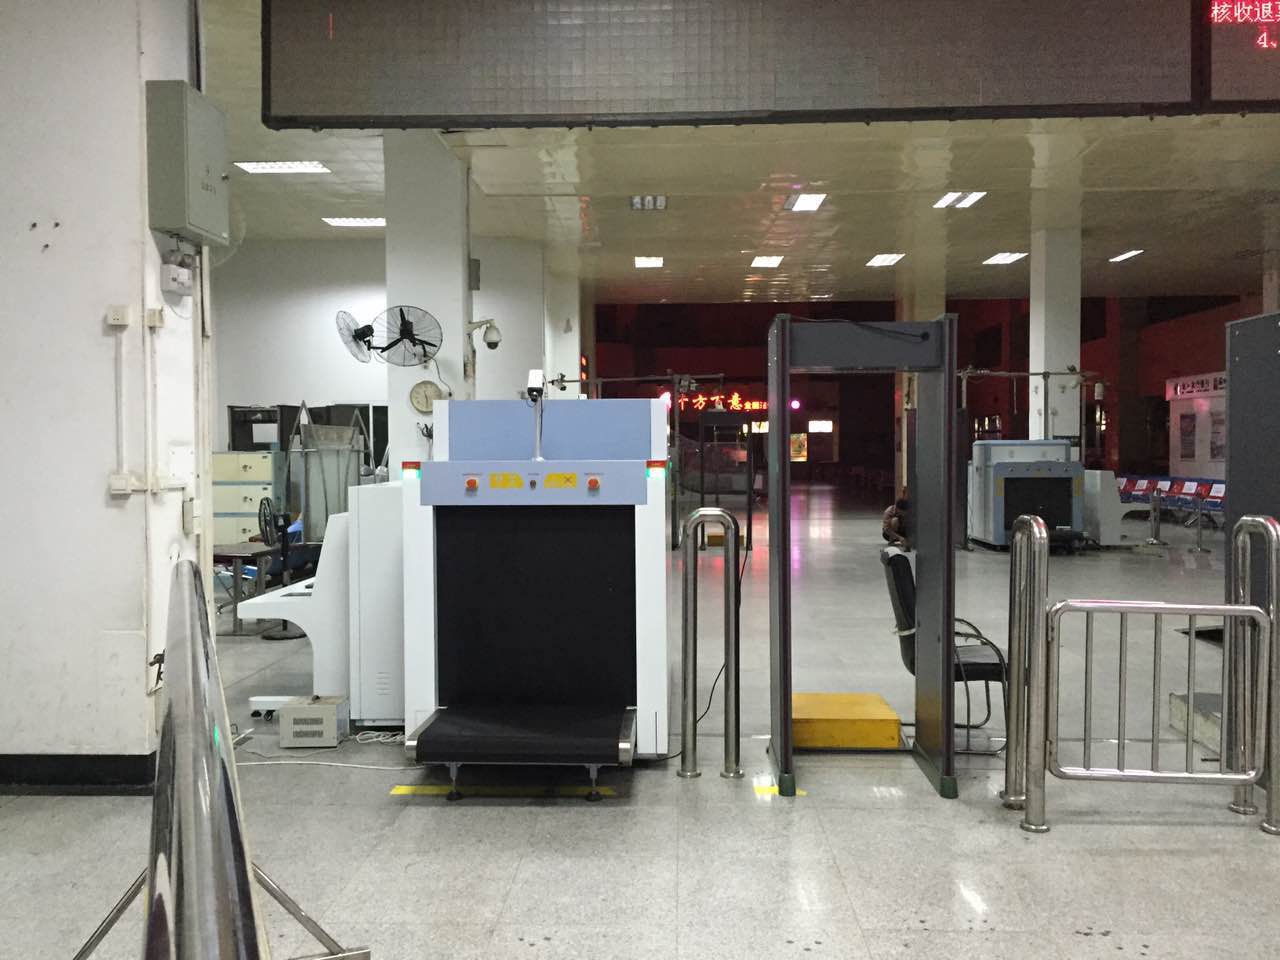 Equipo de seguridad de detección de carga de equipaje de bodega de rayos X